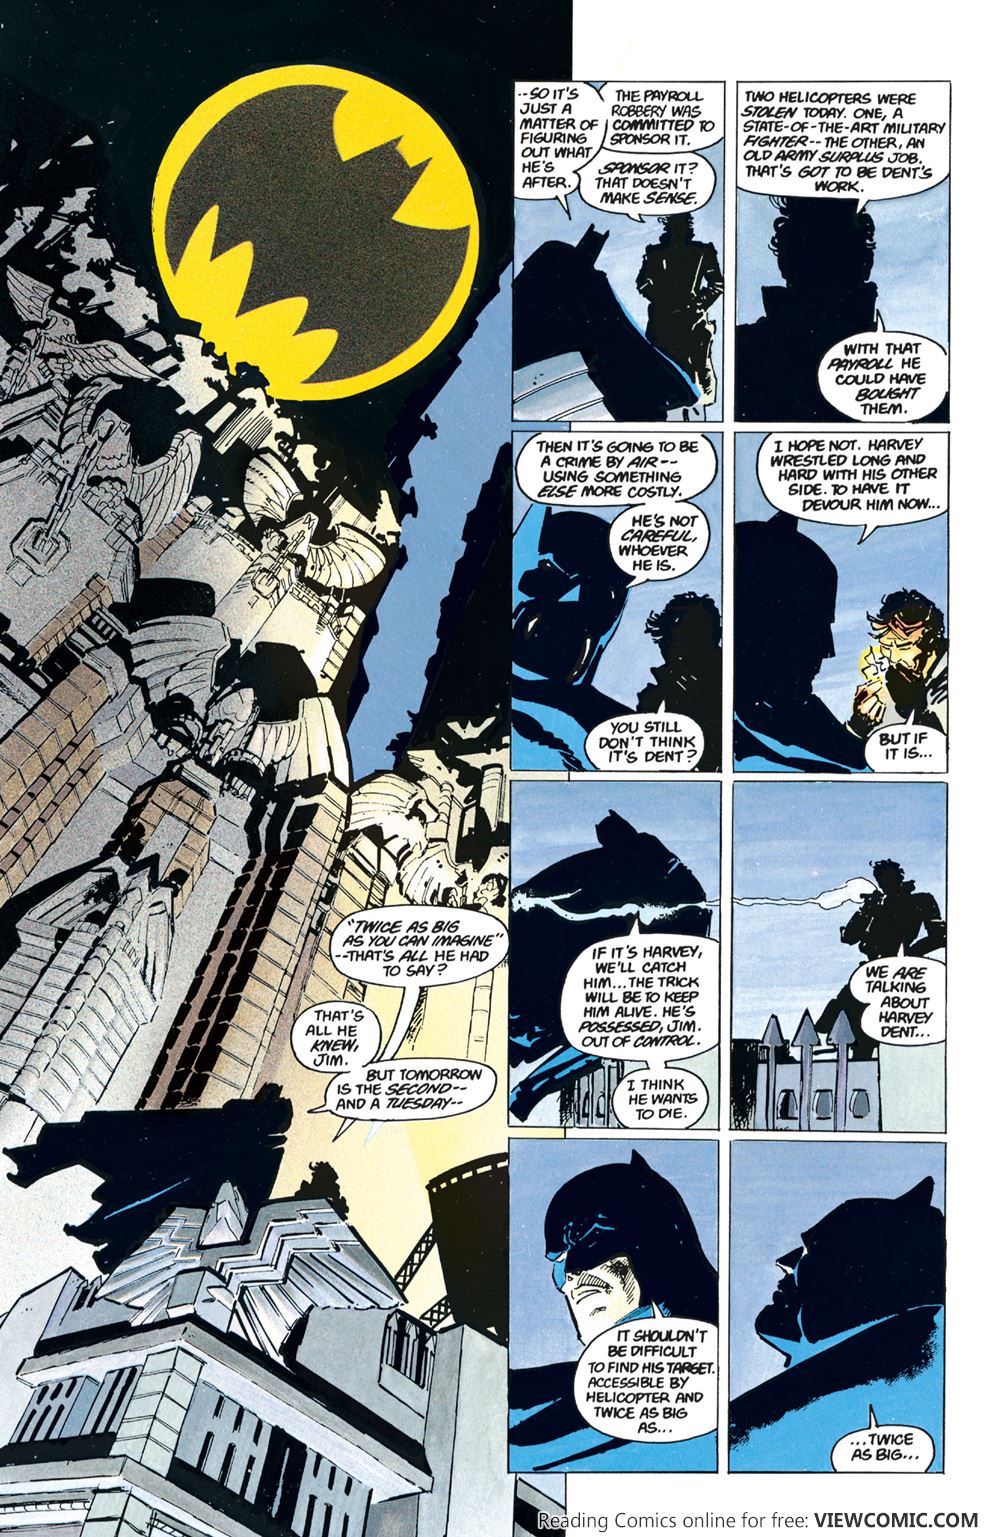 Batman The Dark Knight Returns 1986 | Read Batman The Dark Knight Returns  1986 comic online in high quality. Read Full Comic online for free - Read  comics online in high quality .|